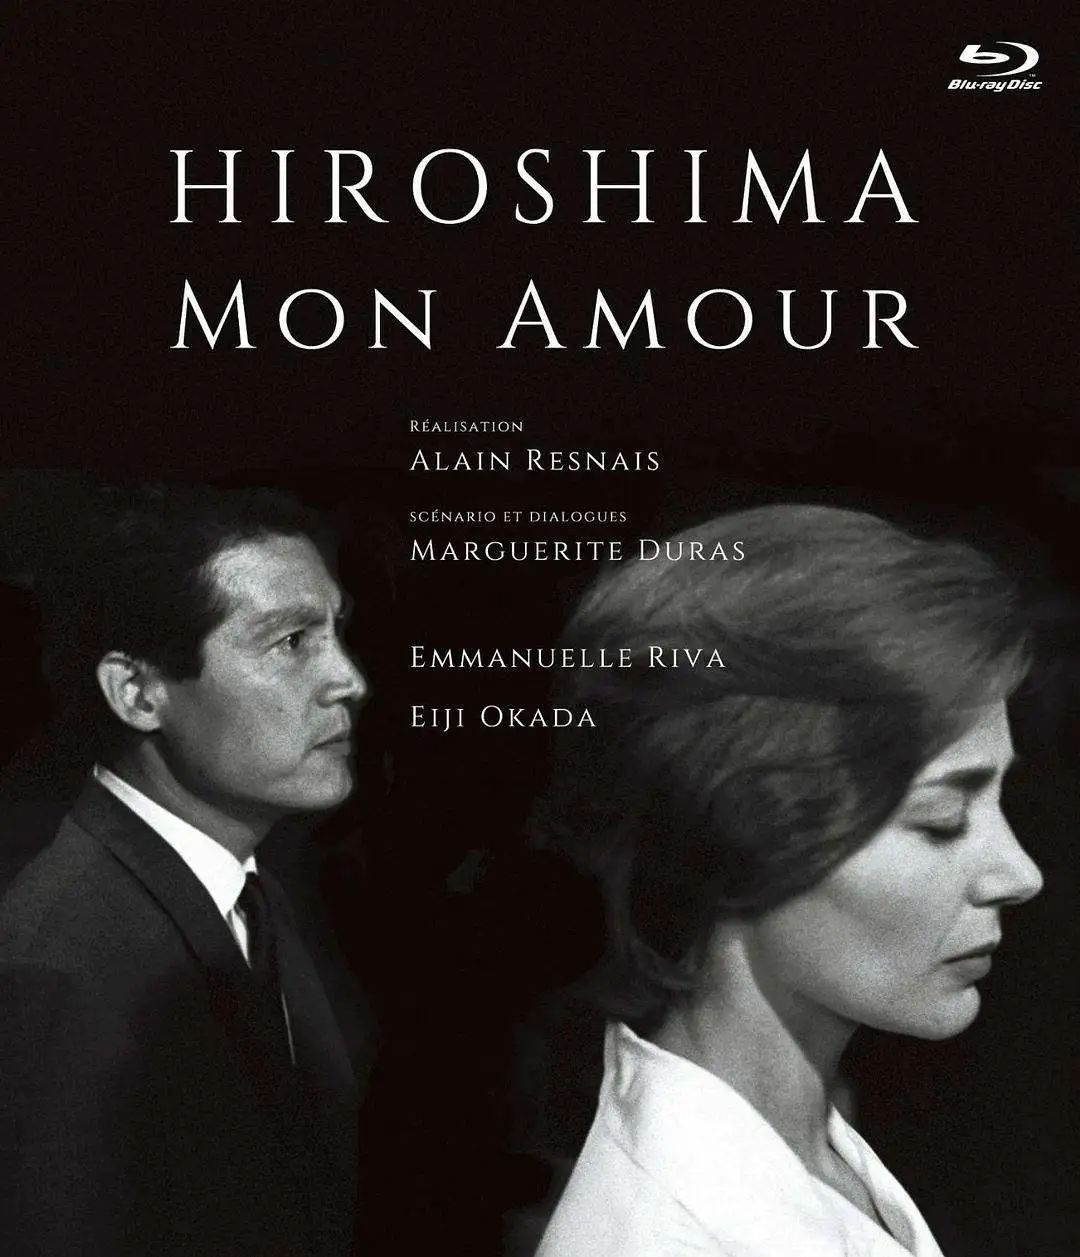 经典电影《Hiroshima mon amour》（中文片名《广岛之恋》）无障碍版上线